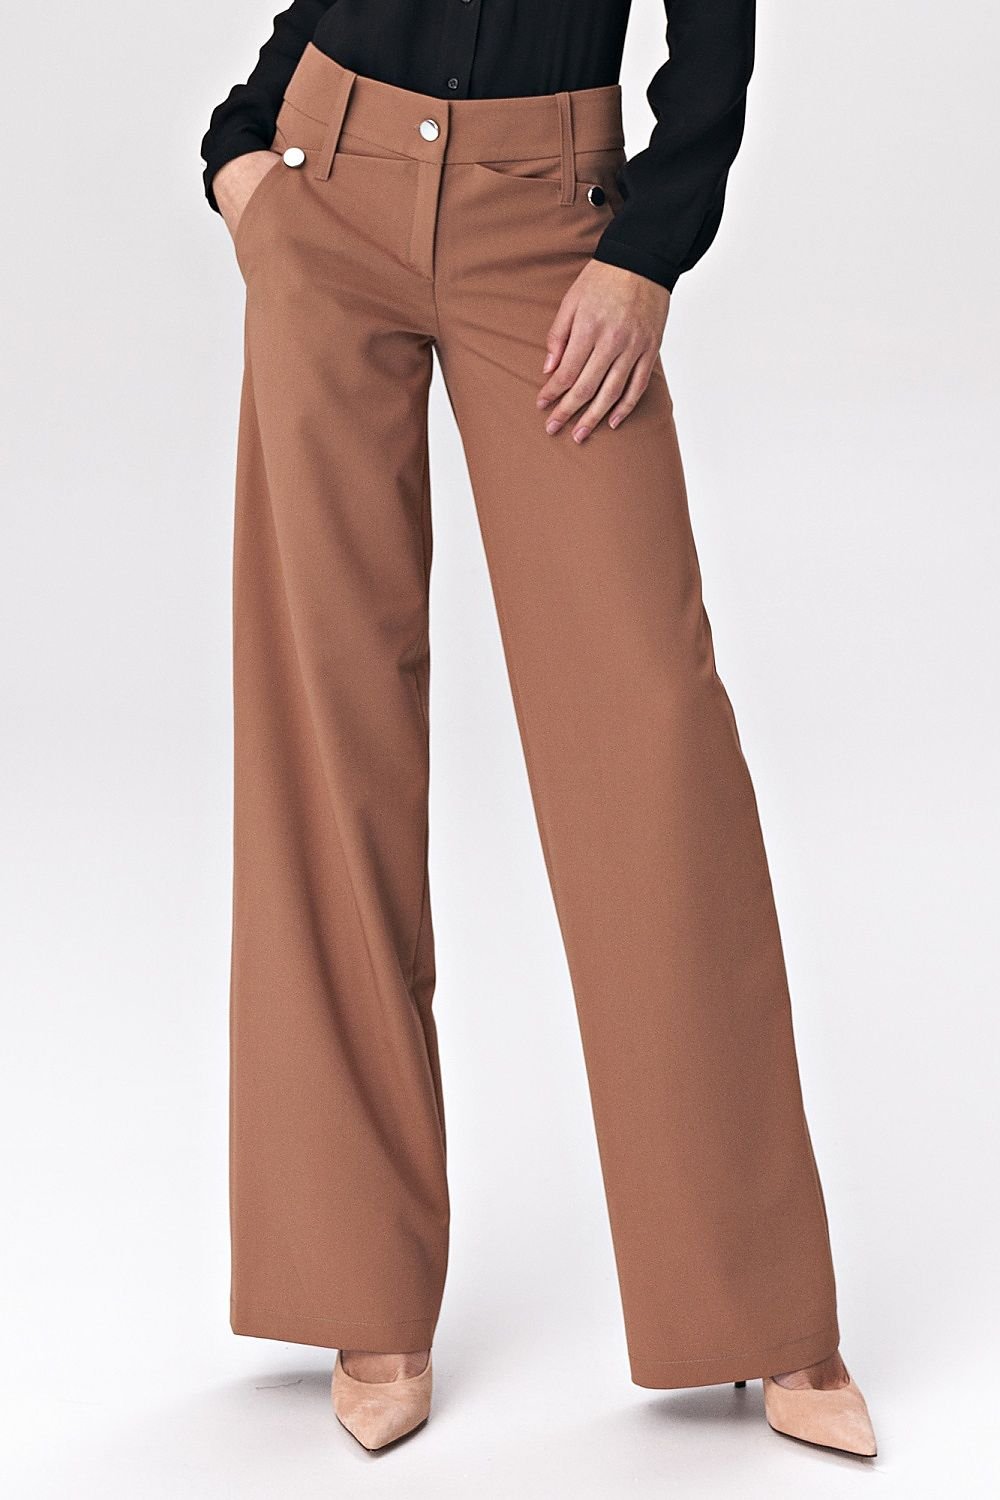 Women trousers model 140889 Nife